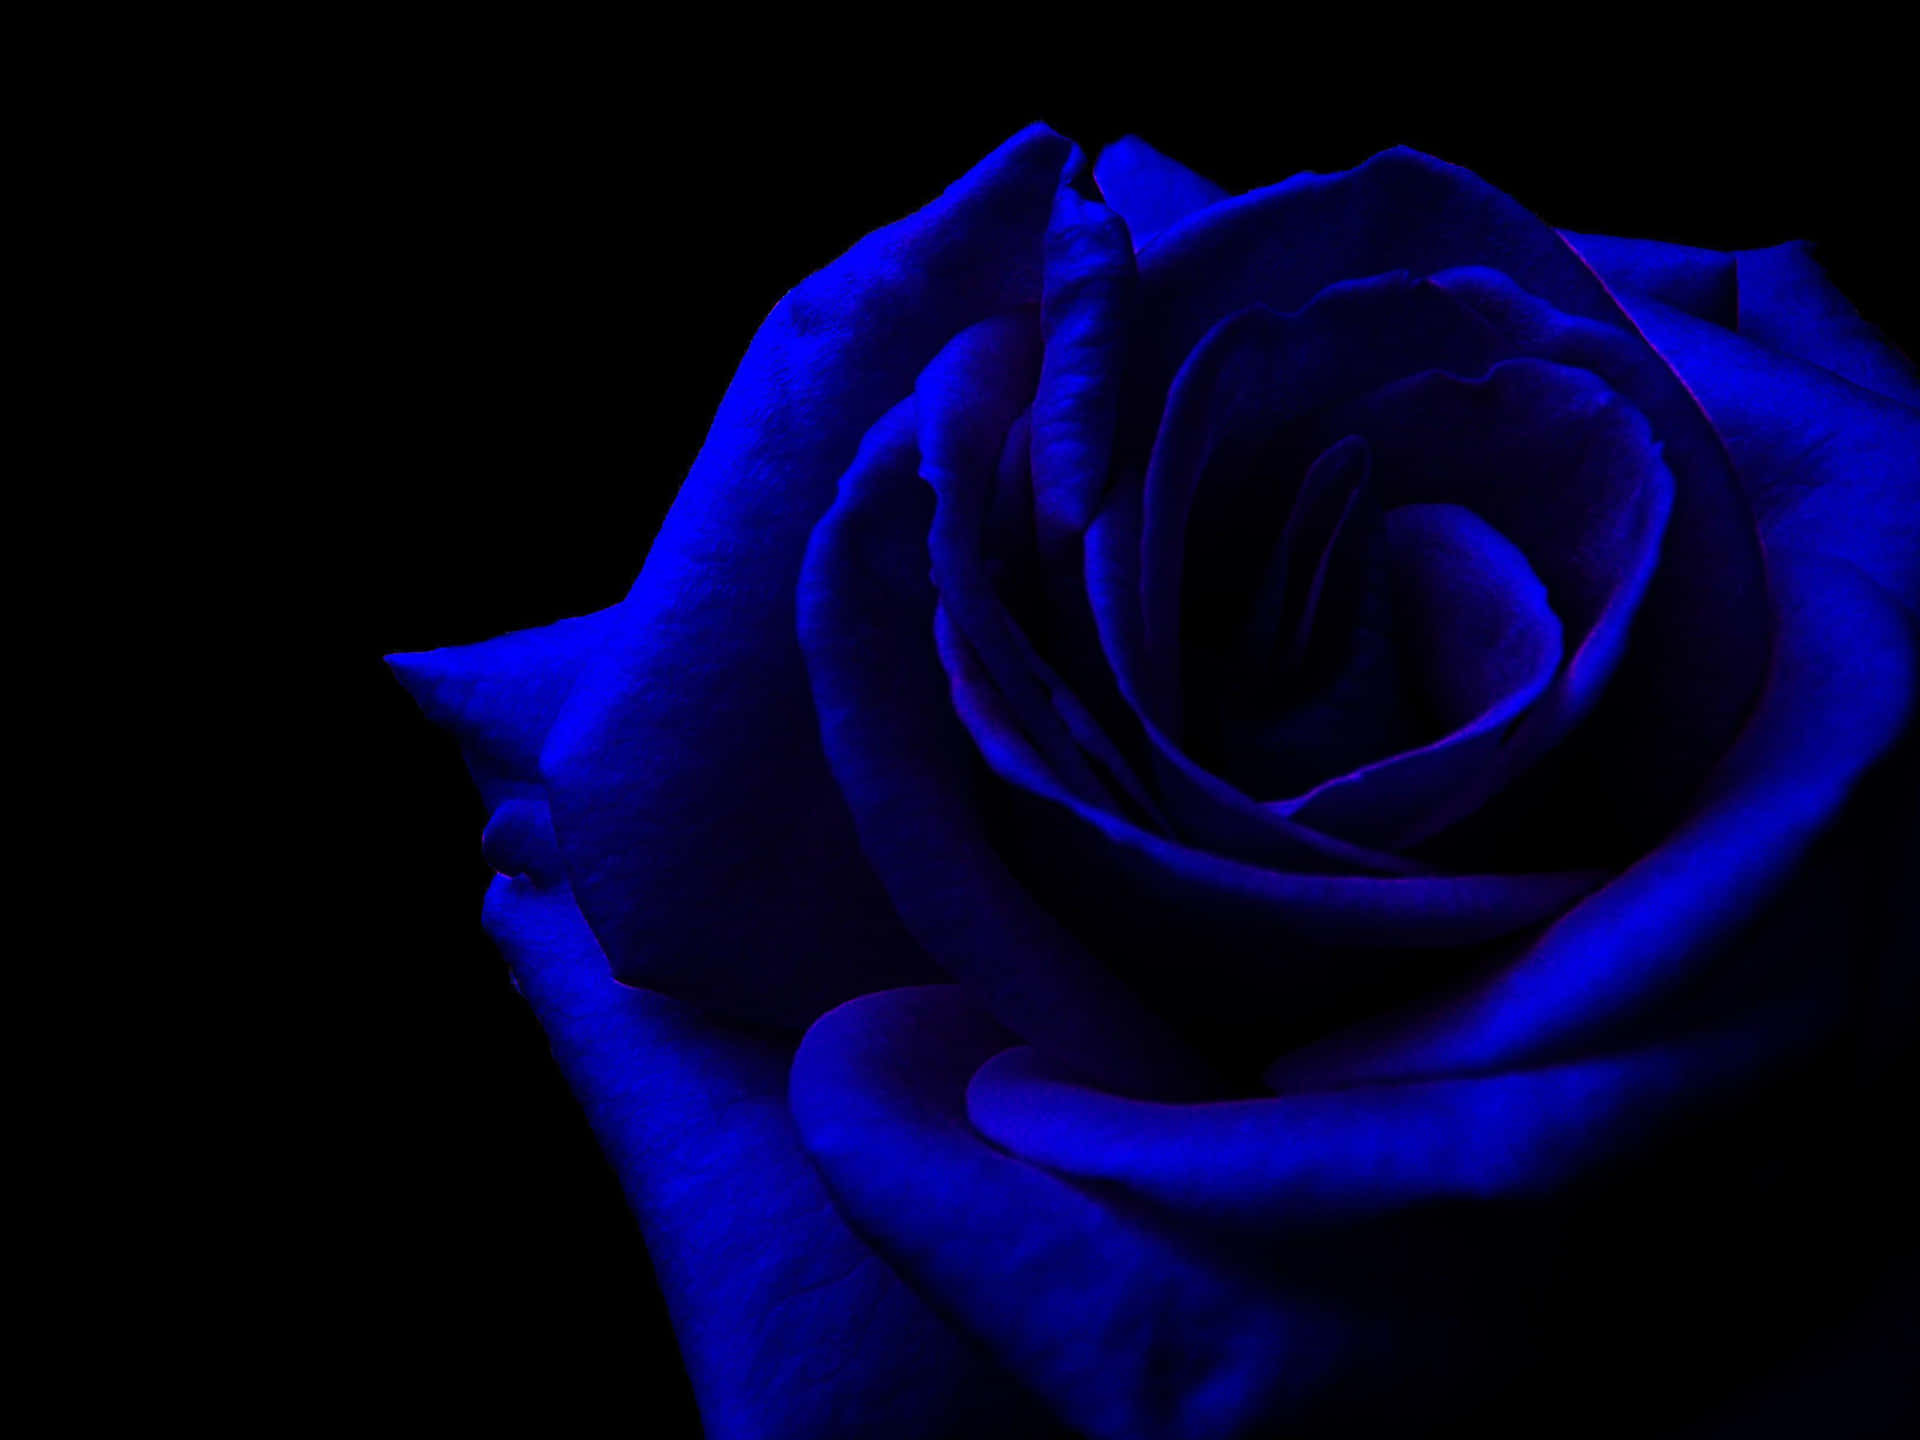 Eineblaue Rose Auf Einem Schwarzen Hintergrund Wallpaper